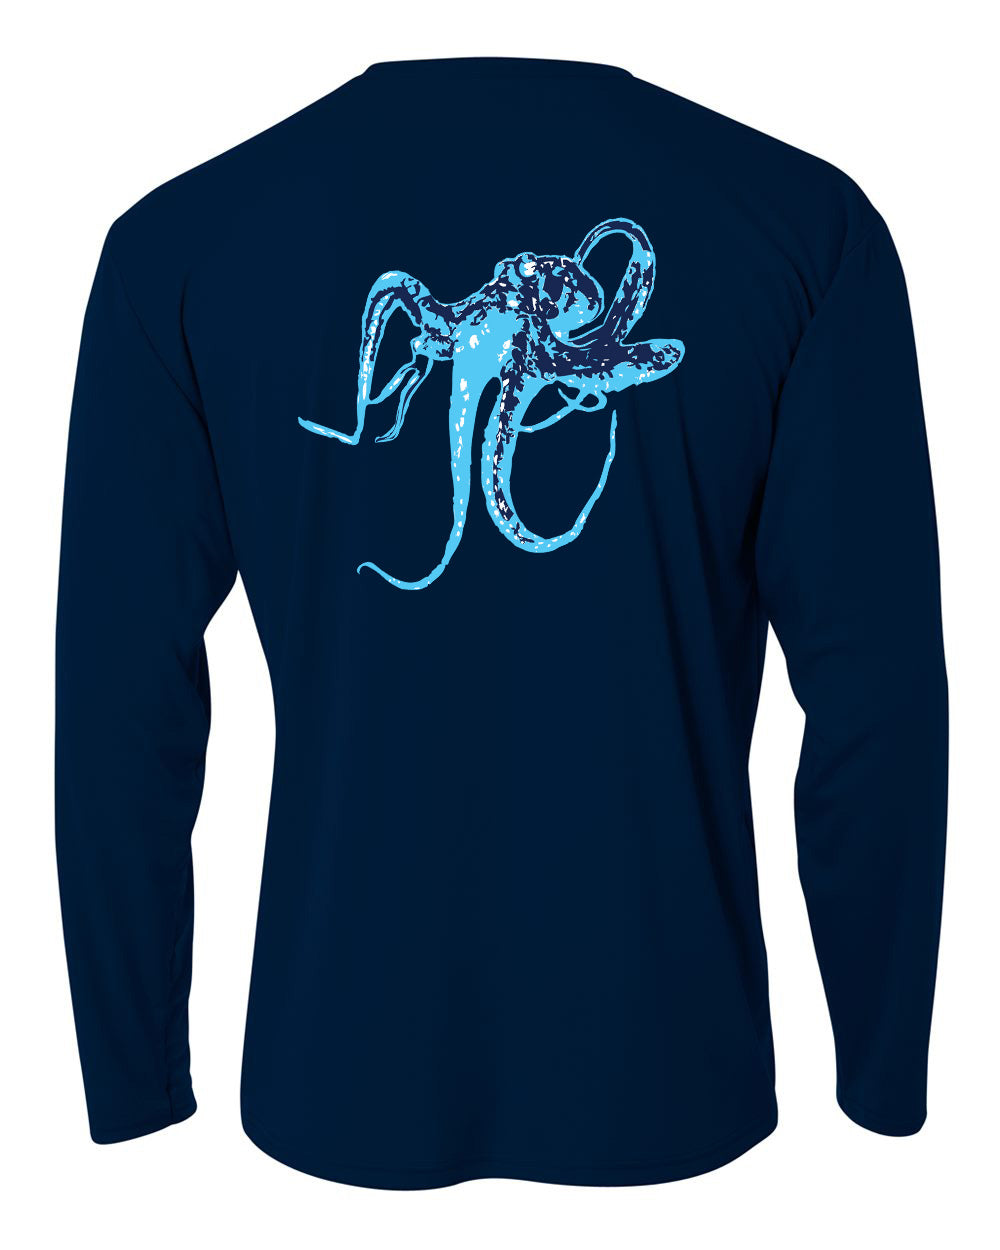 Octopus Fishing Shirt - Teal - Liquid Coastal